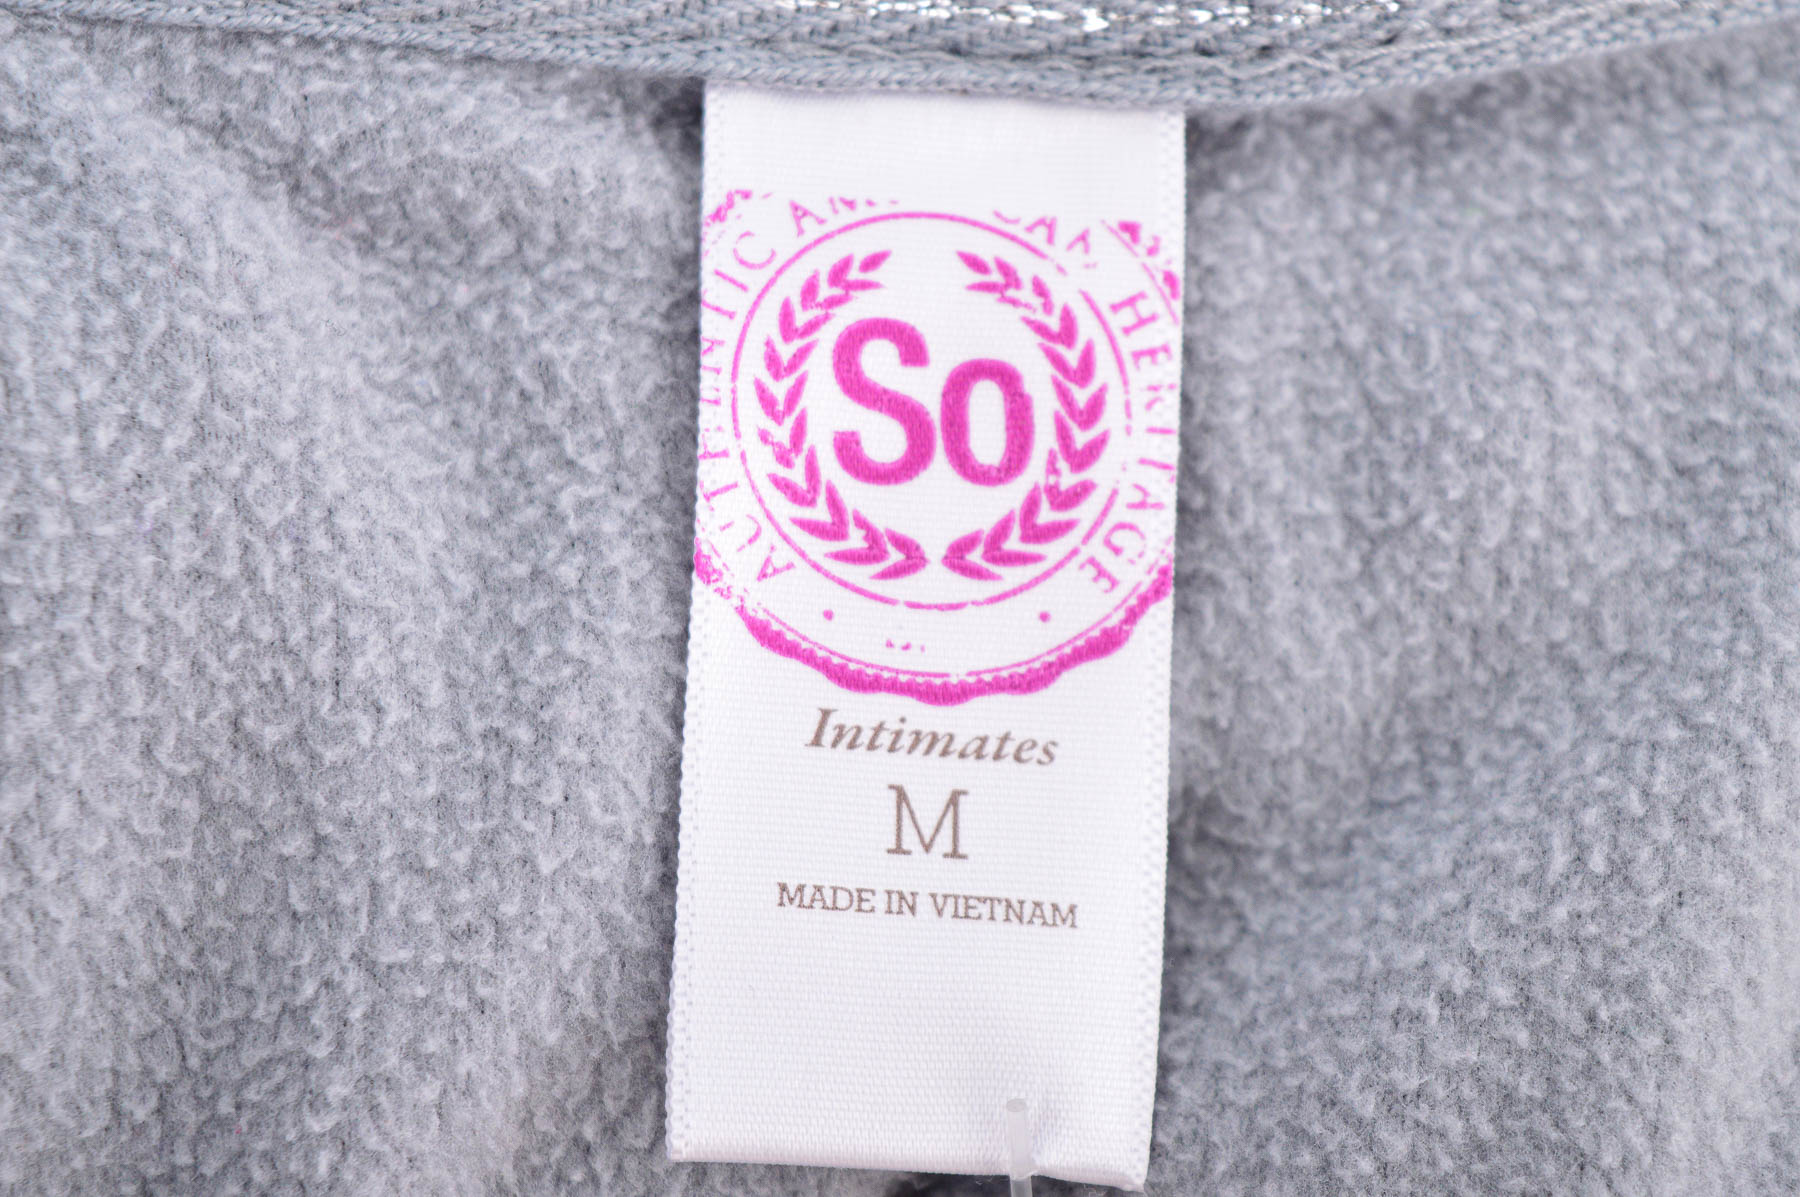 Γυναικείο ρούχο απο πολικό υφασμα - So - 2